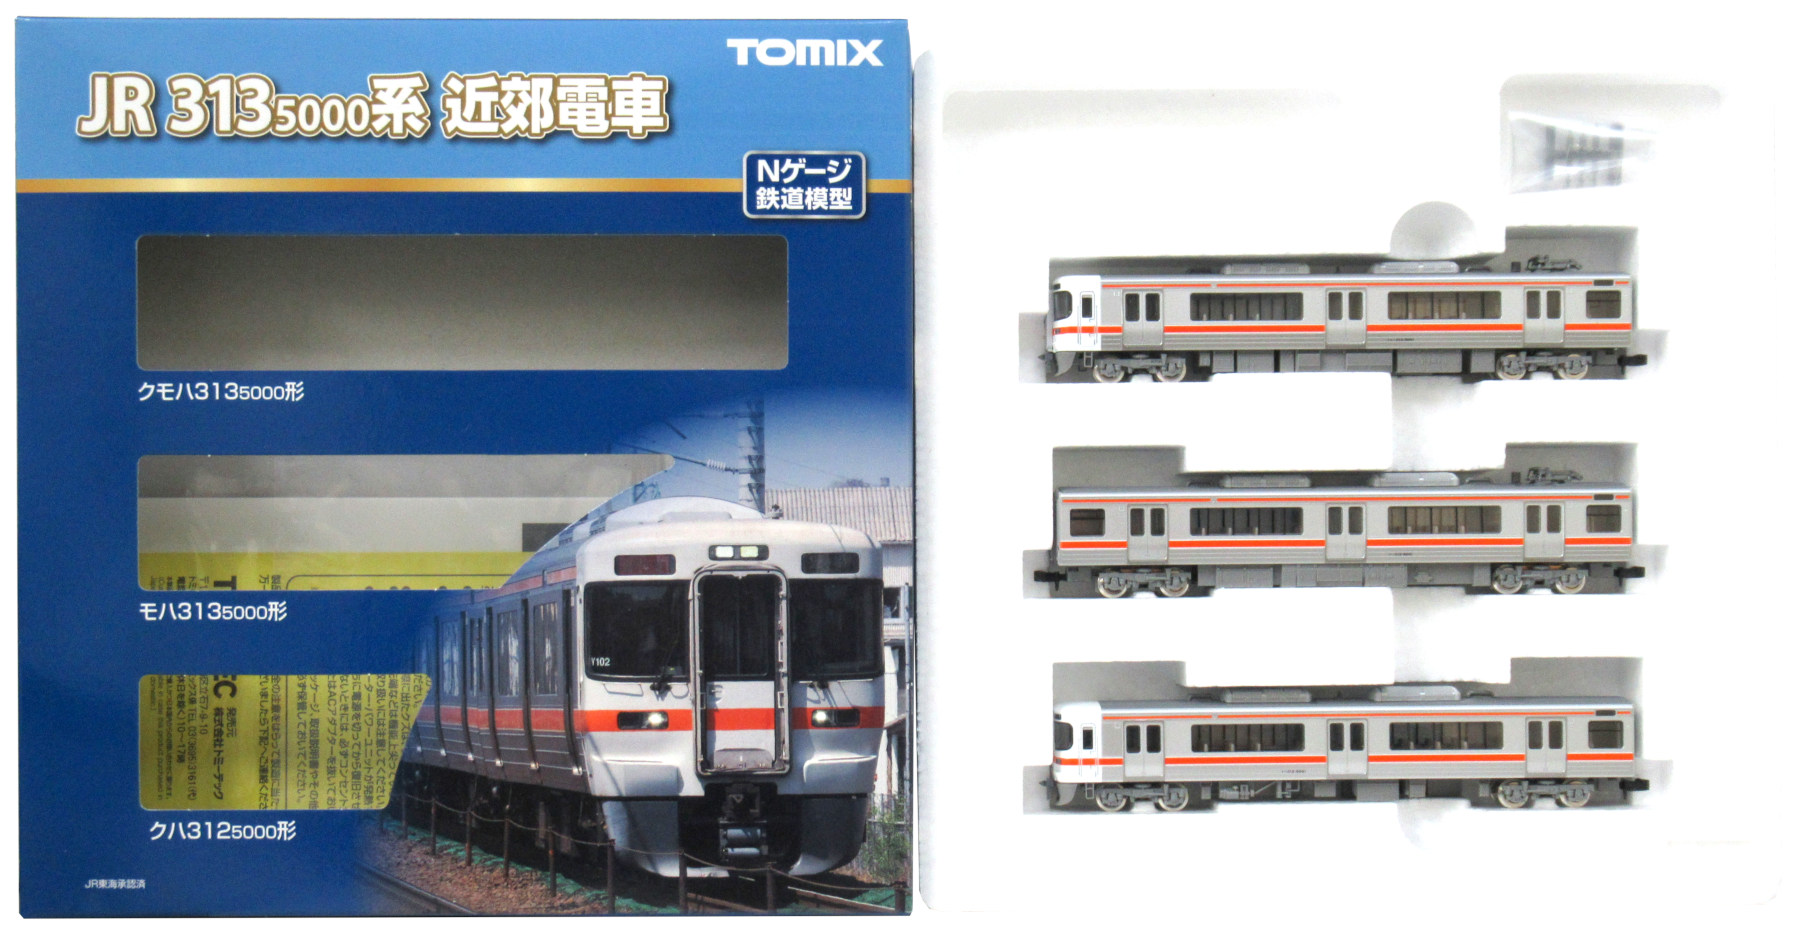 総合福袋 TOMIX Nゲージ マルチ高架橋S140 対向式ホーム用 2組入 3261 鉄道模型用品